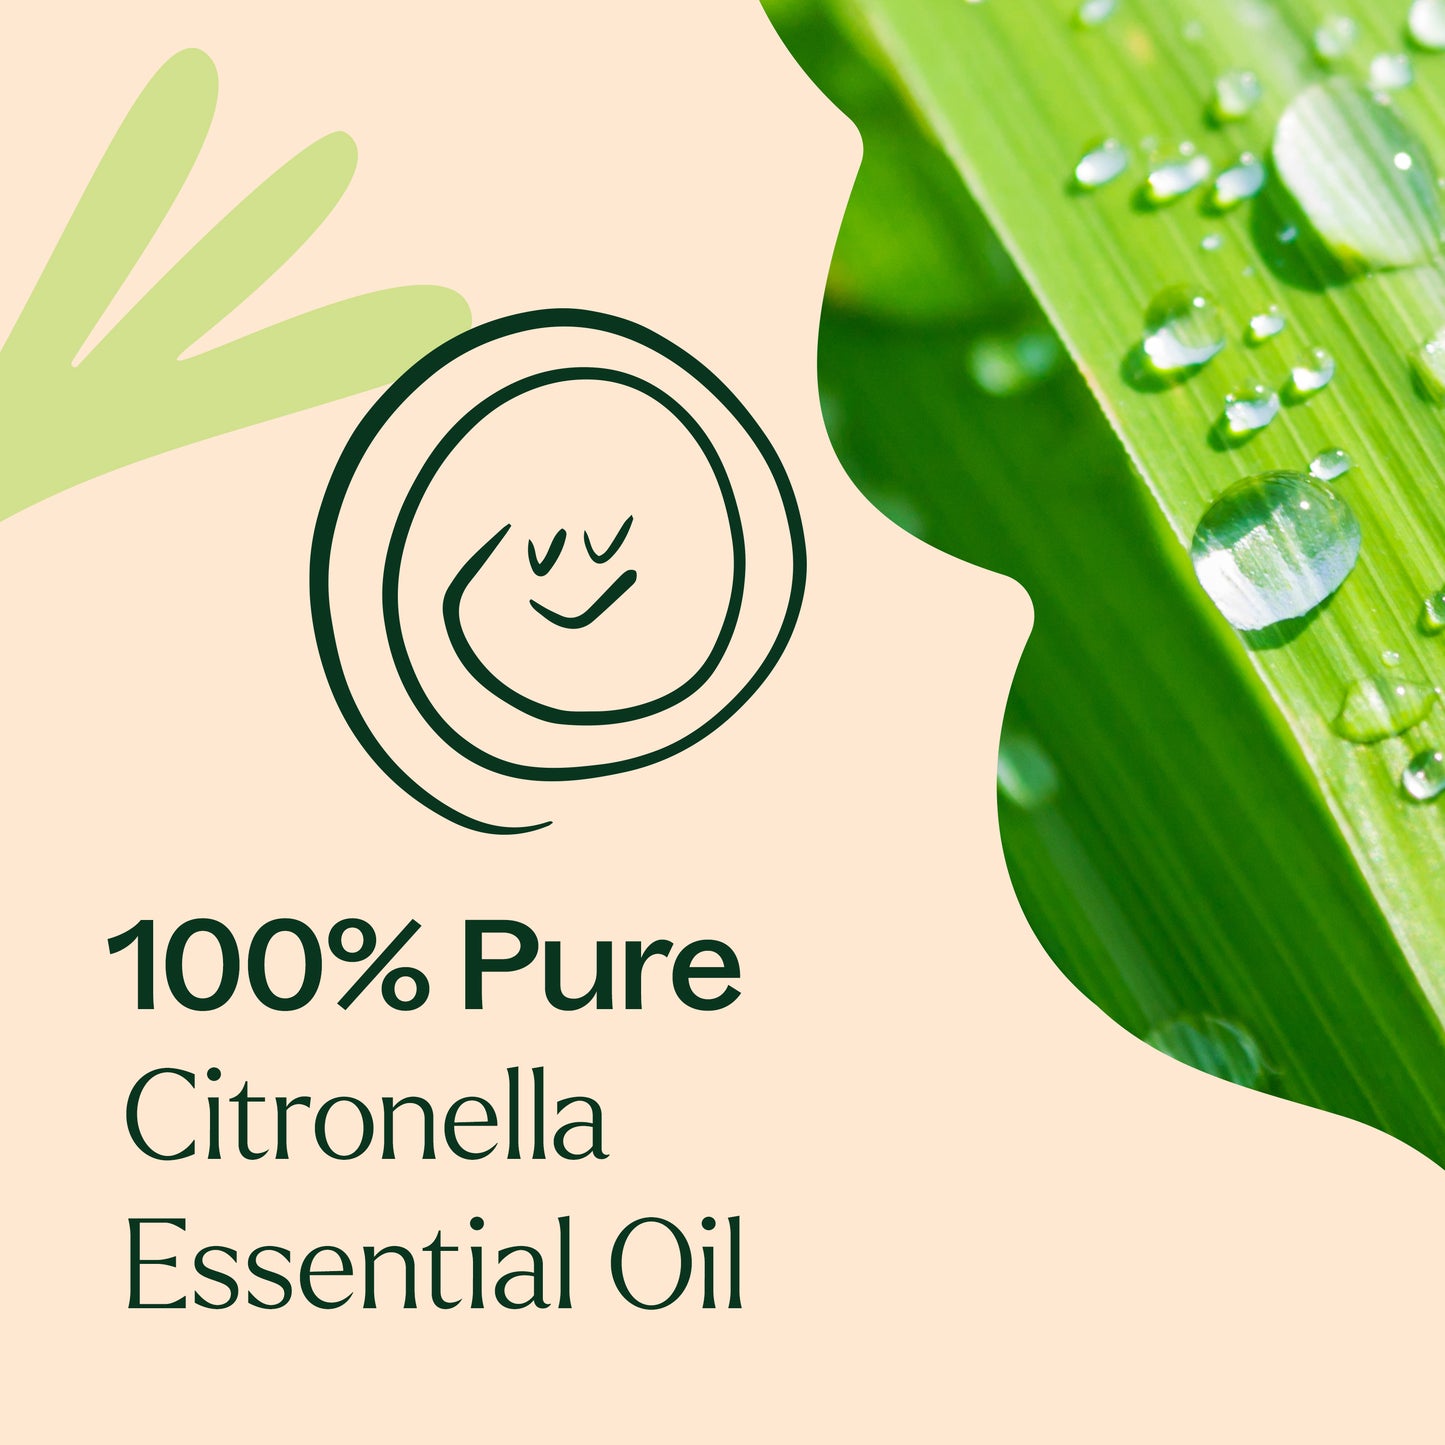 100% pure Citronella Essential Oil